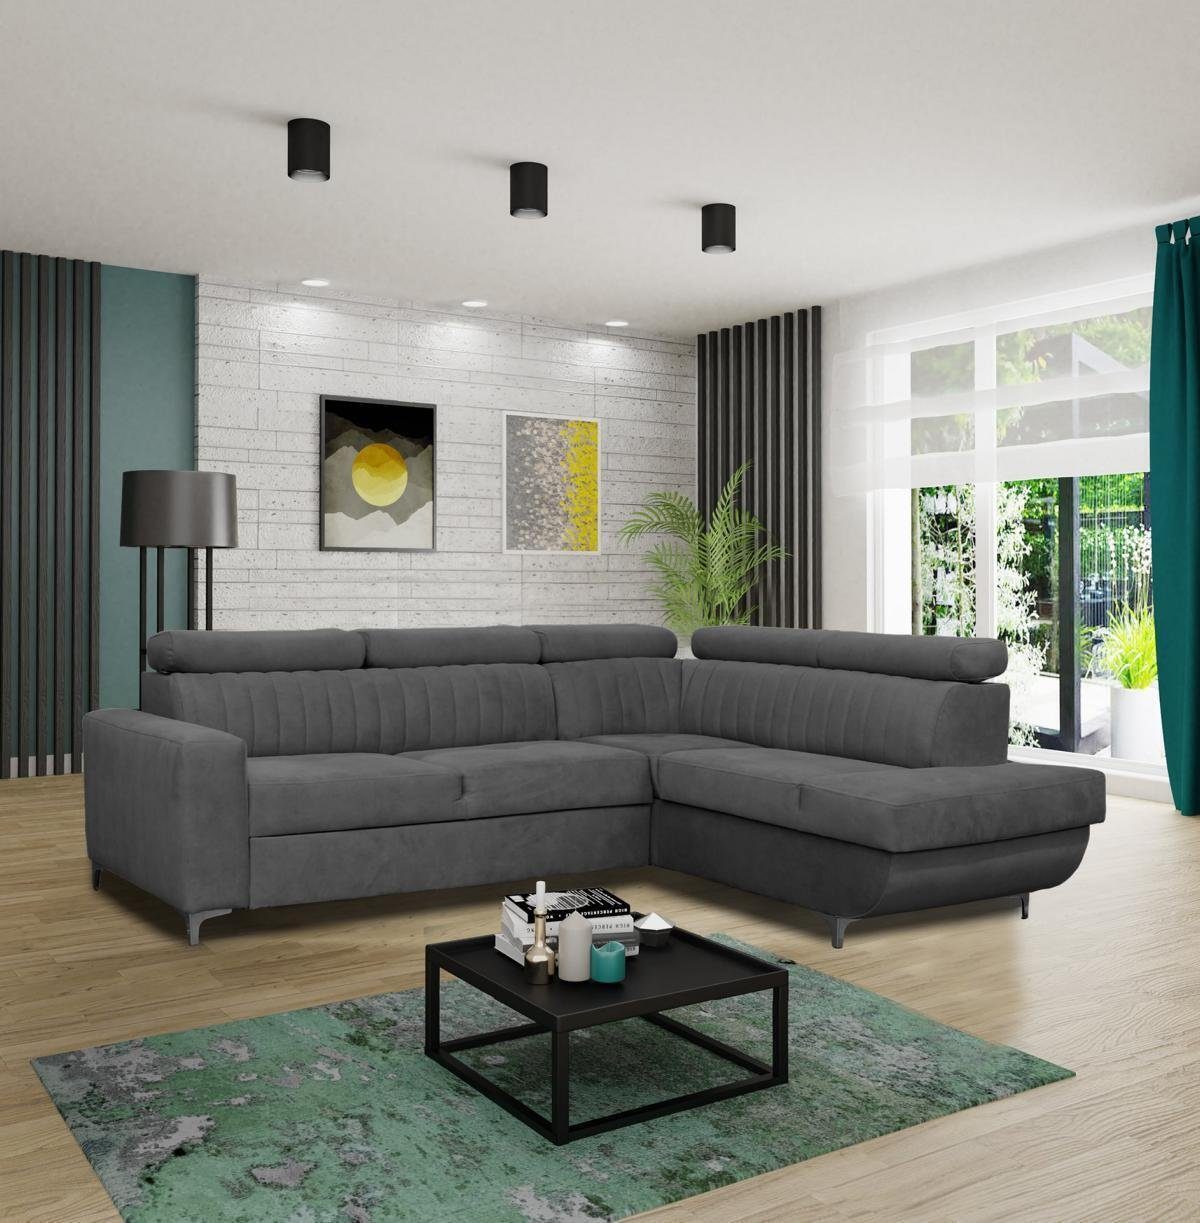 JVmoebel Grau Couch Ecke Sofas in Ecksofa Textil Made Europe Sitz Wohnzimmer, L-Form Sofa